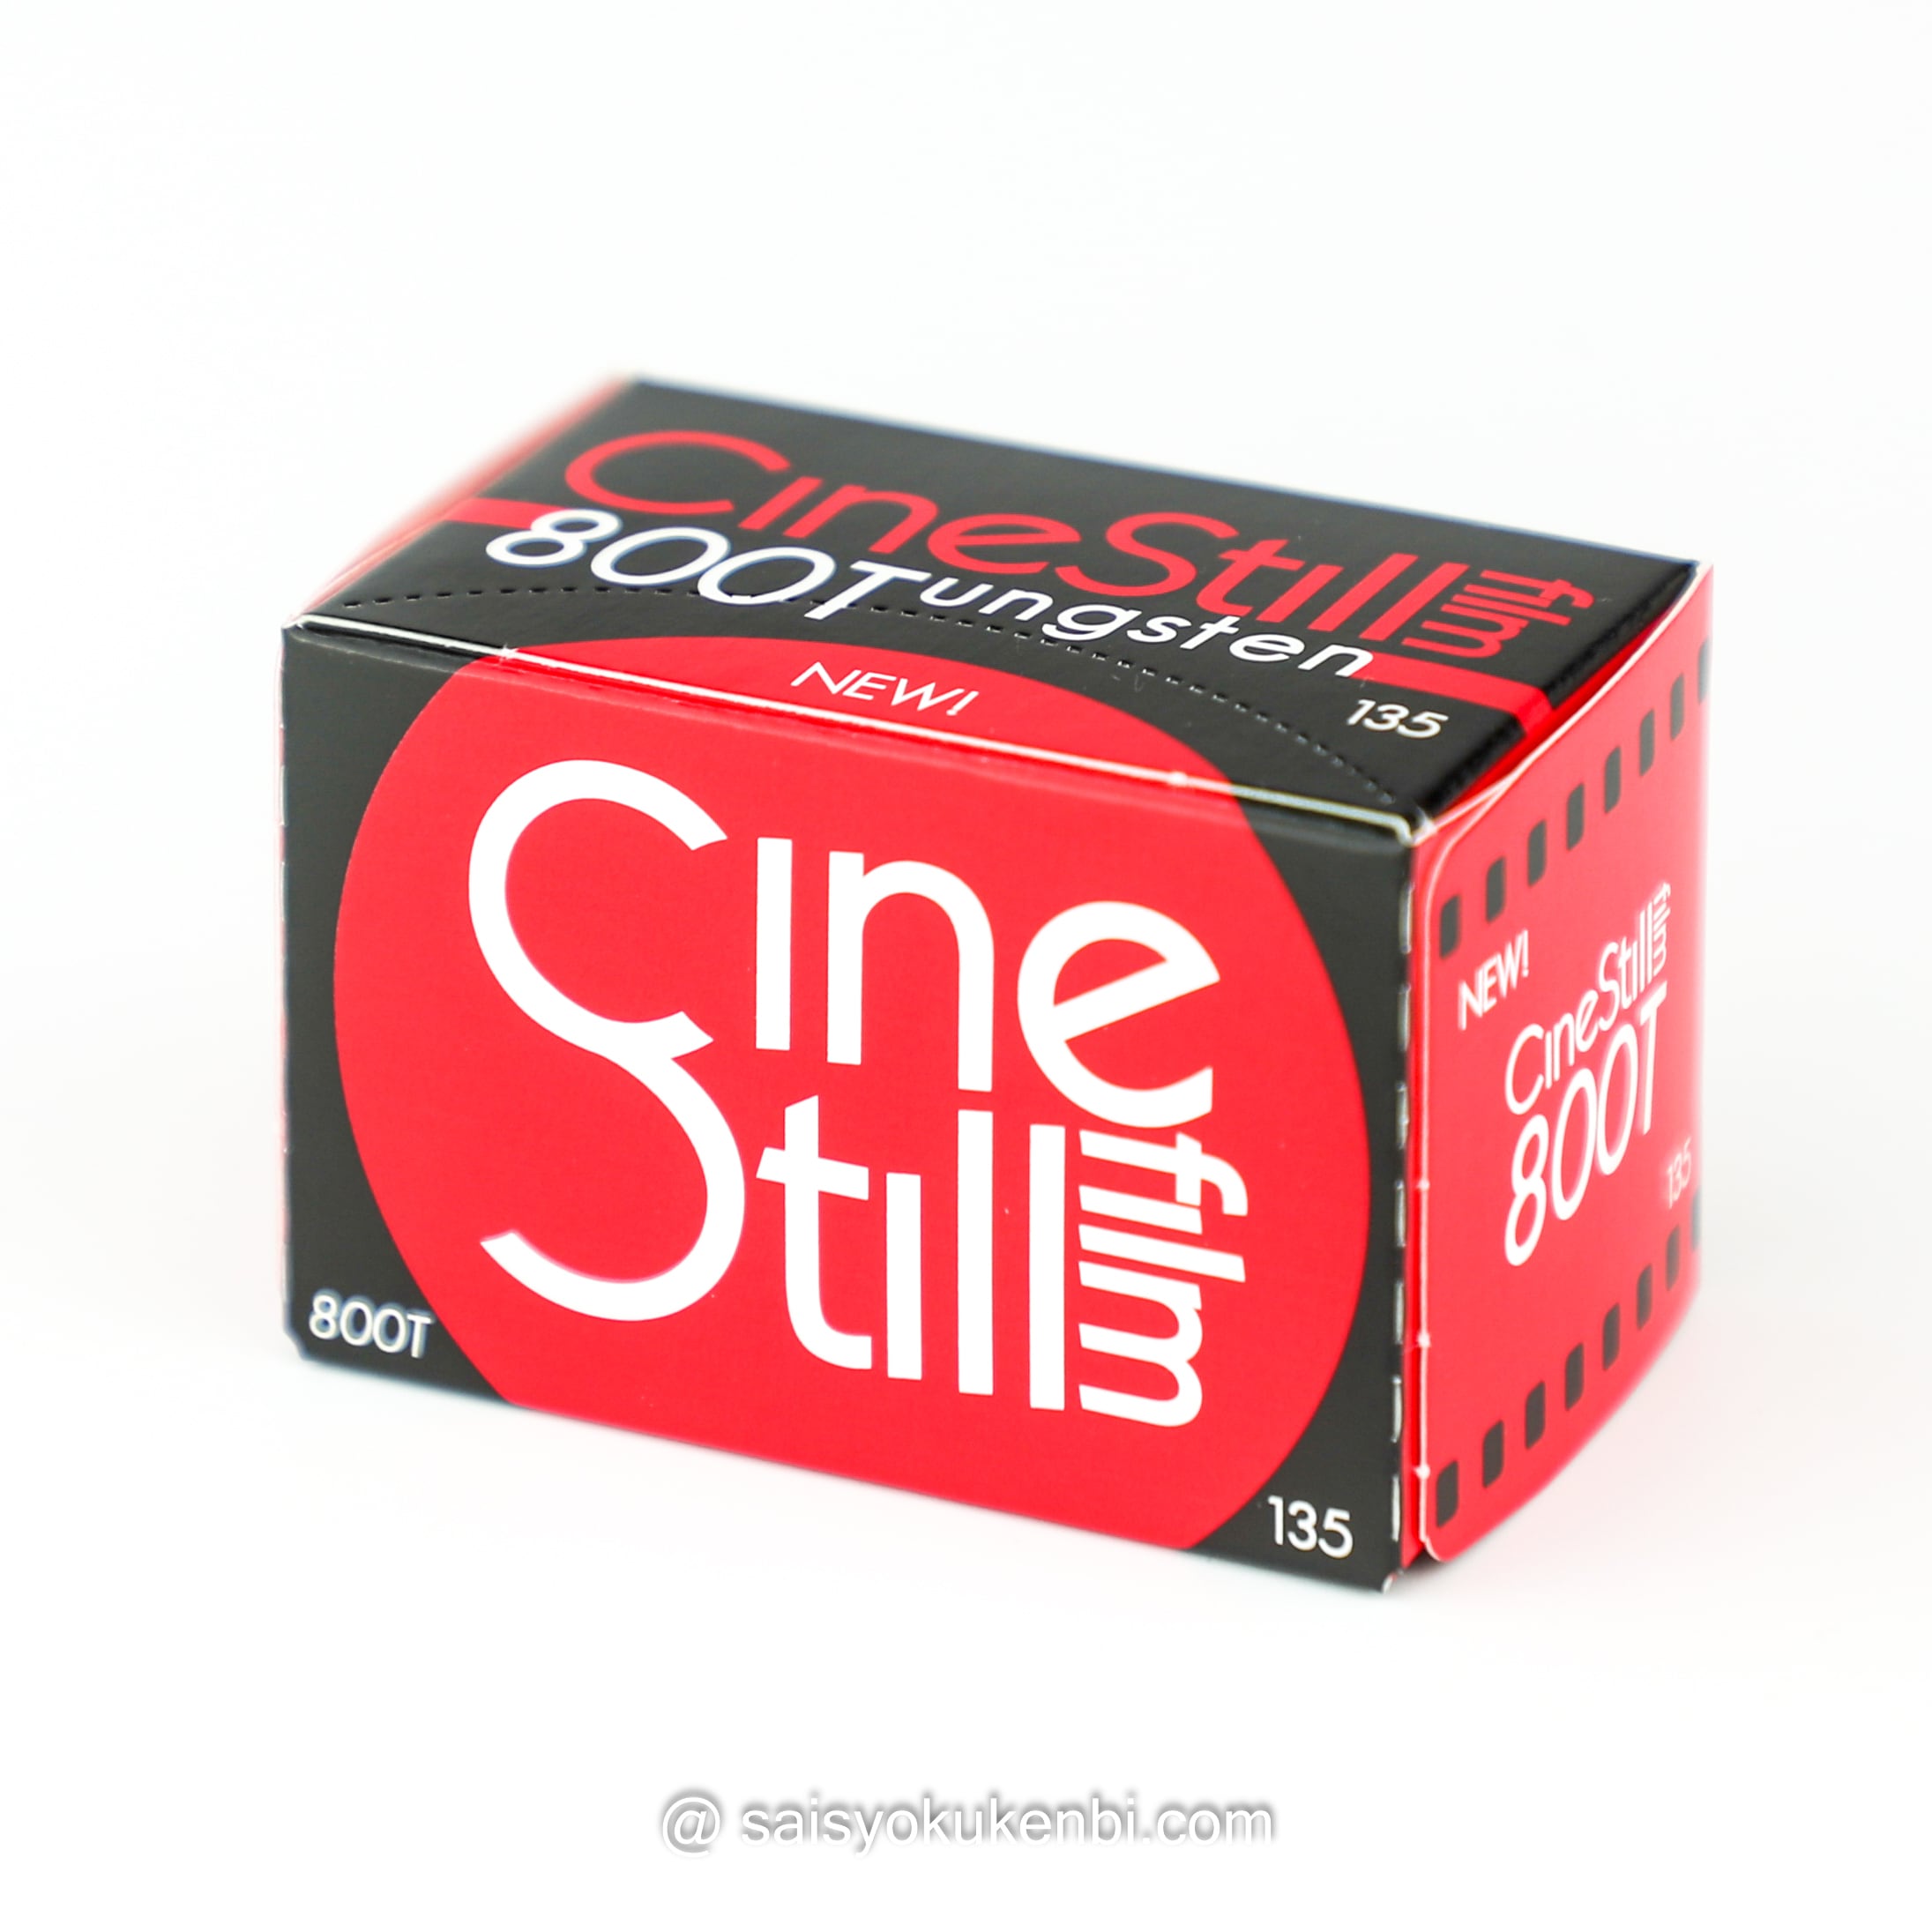 映画風の色味 青みがかった独特の描写 シネスチル800Tタングステン ISO800 36枚 1本入り CineStill Film 800T  カラーネガフィルム 135mm Tungsten 35ミリ